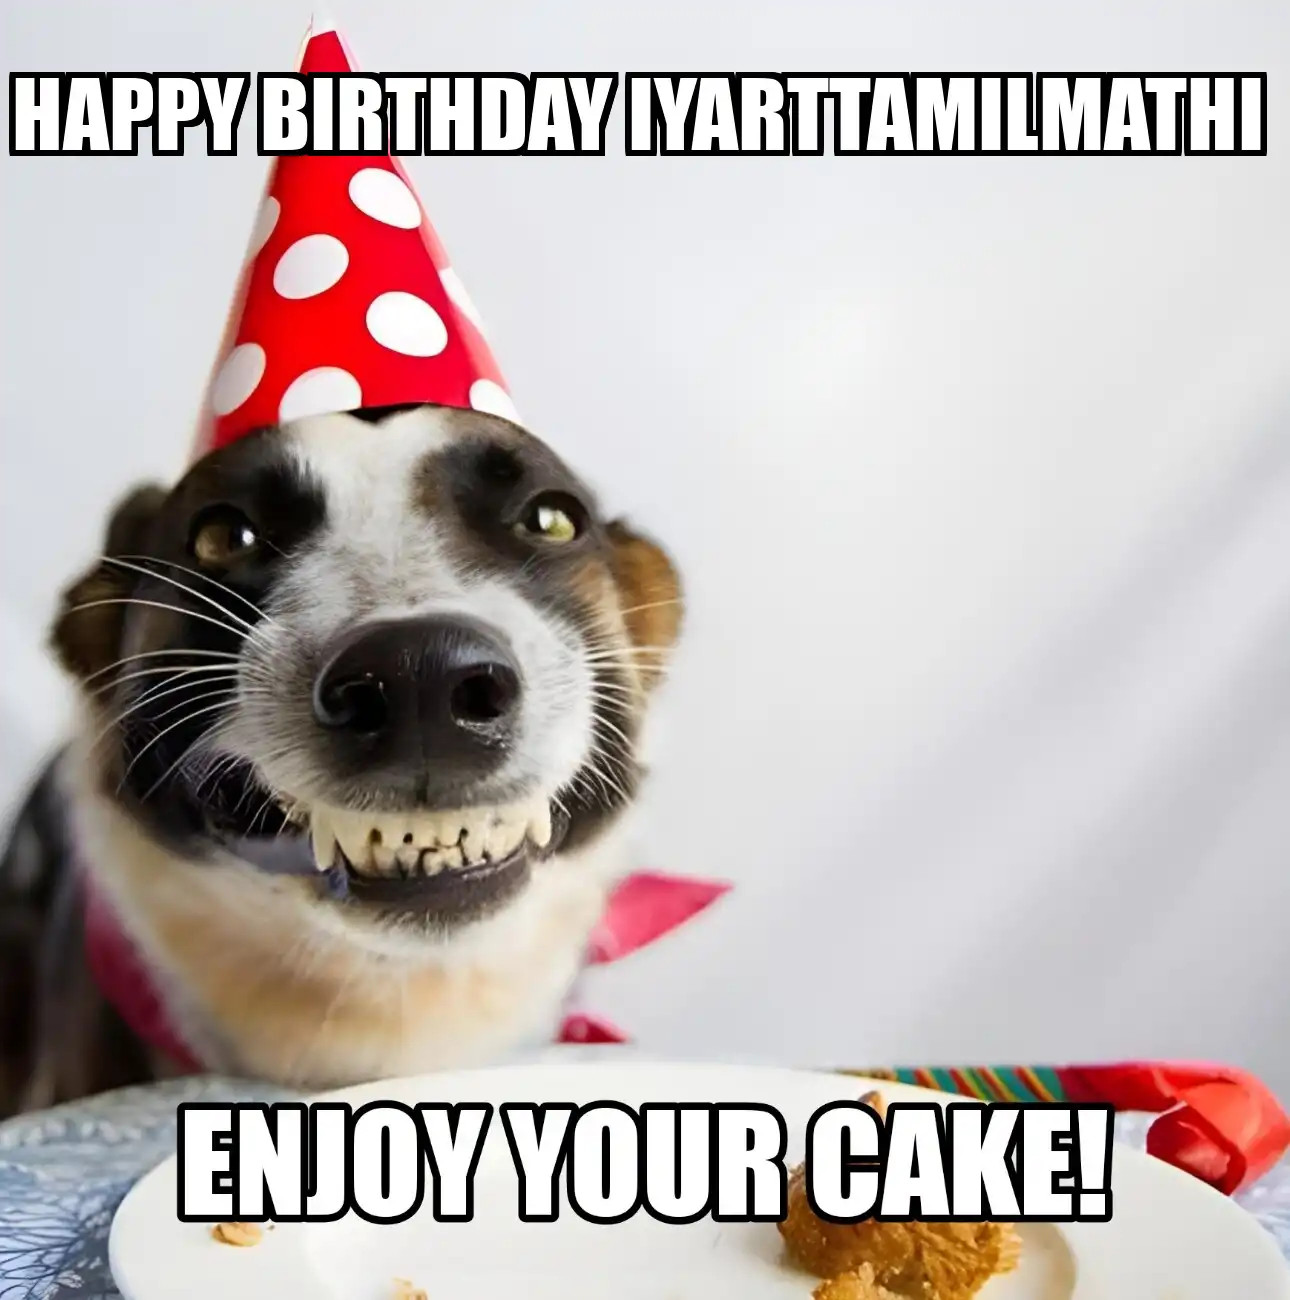 Happy Birthday Iyarttamilmathi Enjoy Your Cake Dog Meme